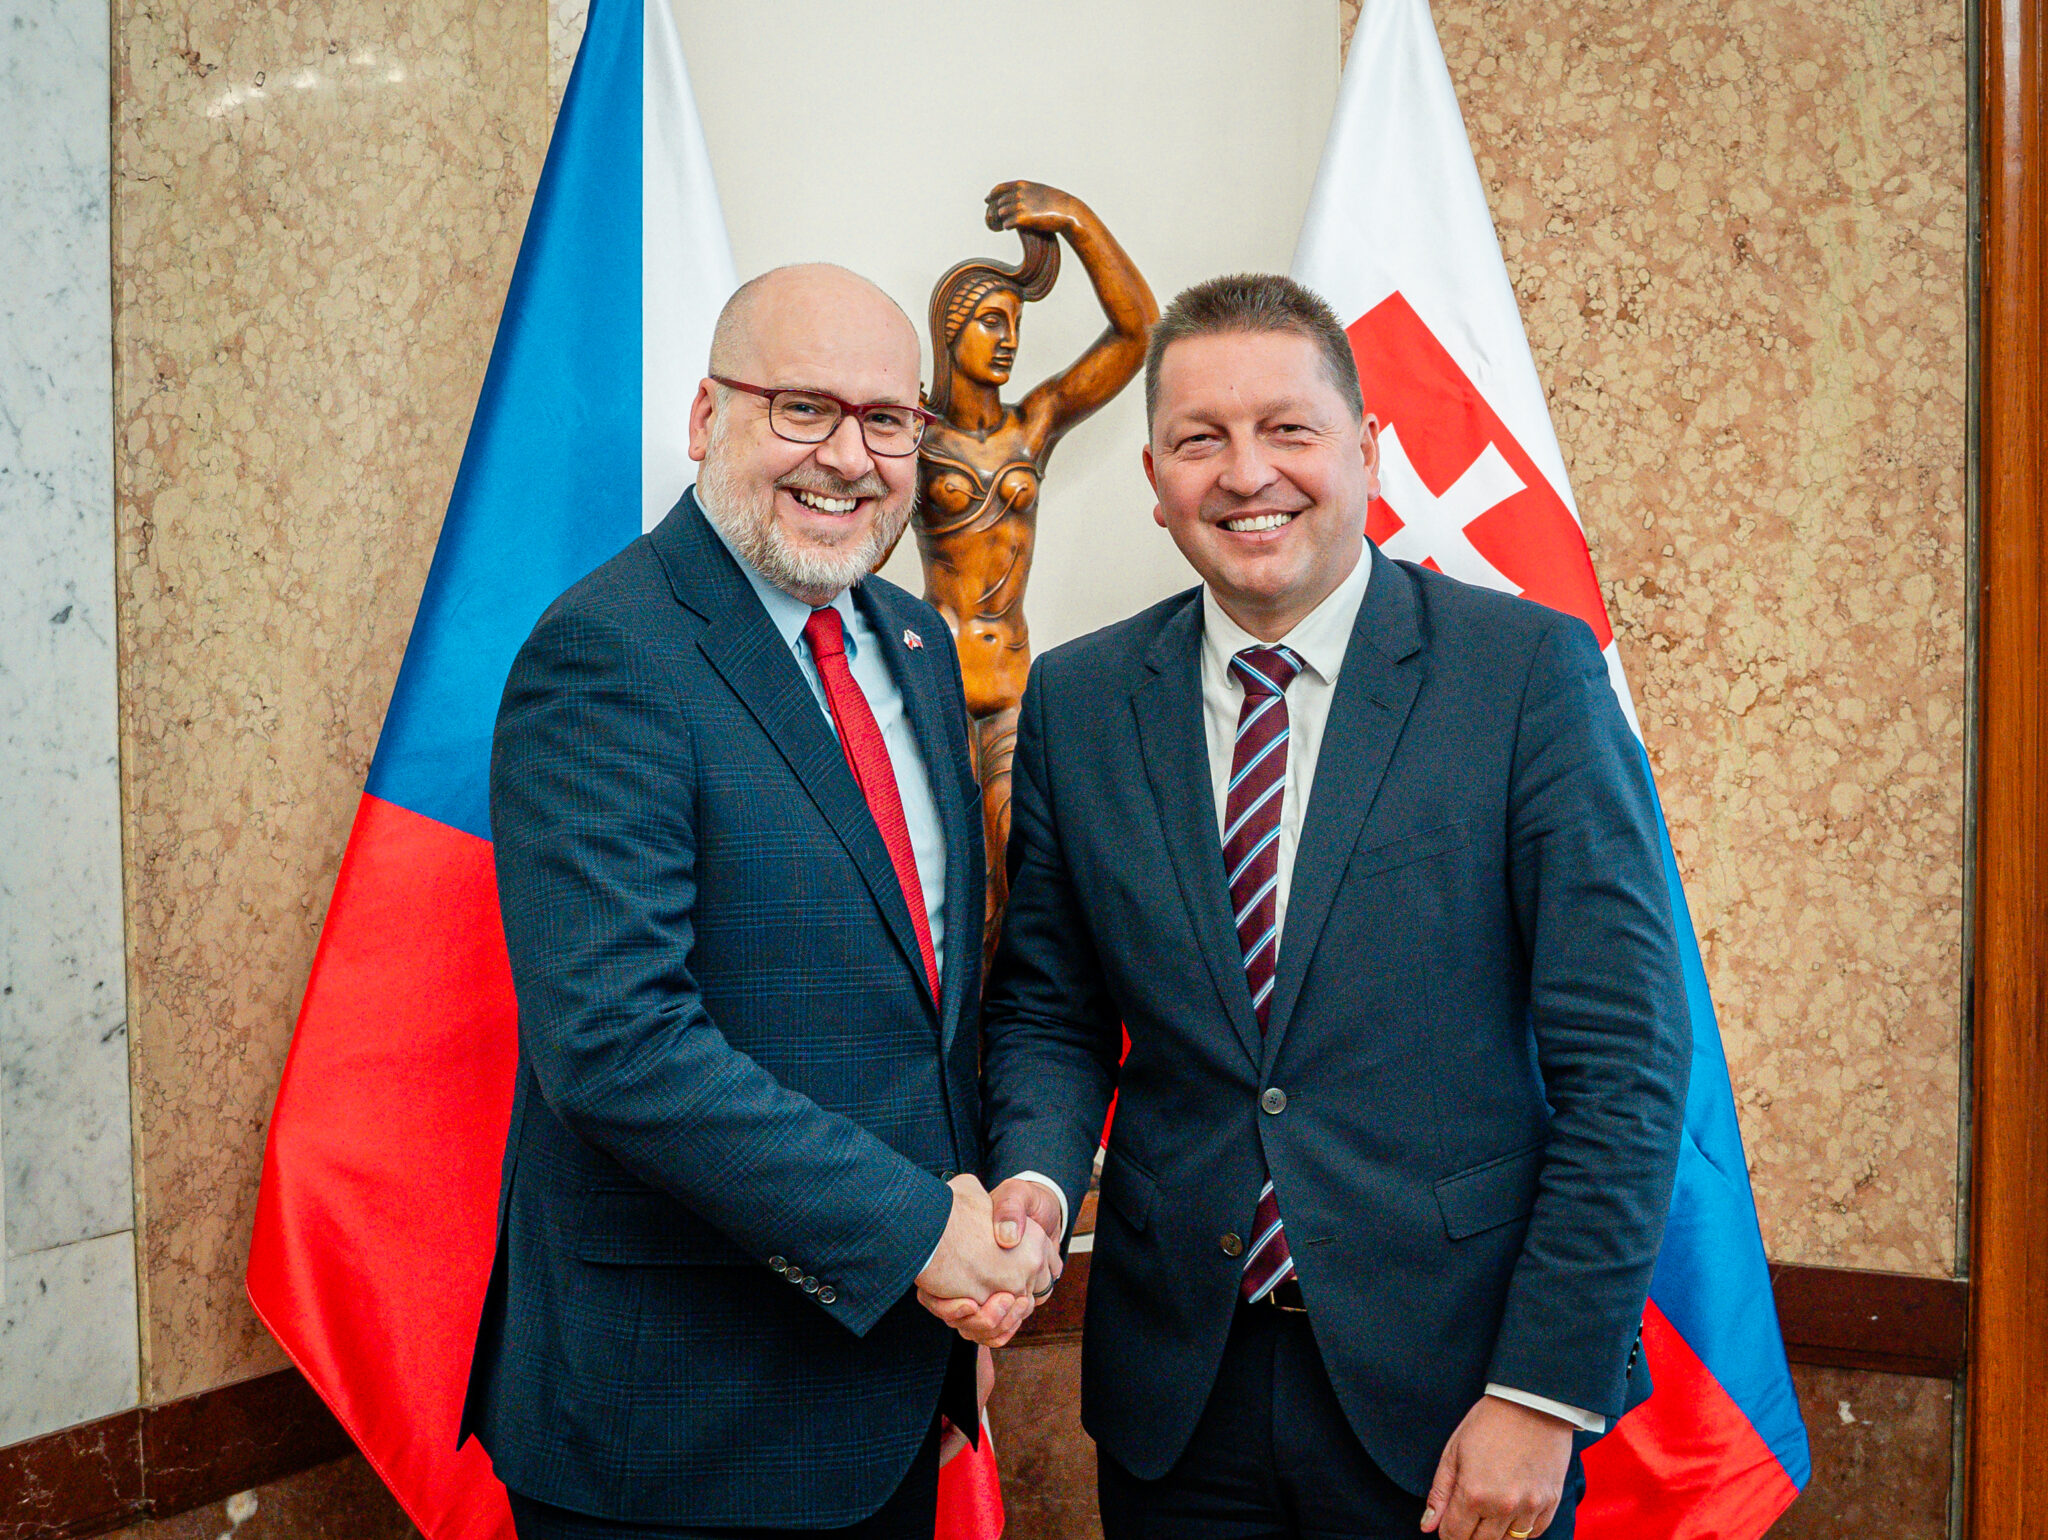 Štátny tajomník Michal Kaliňák: Rokovania s našimi českými partnermi sú pre nás inšpiráciou pri zvyšovaní kvality života ľudí v regiónoch